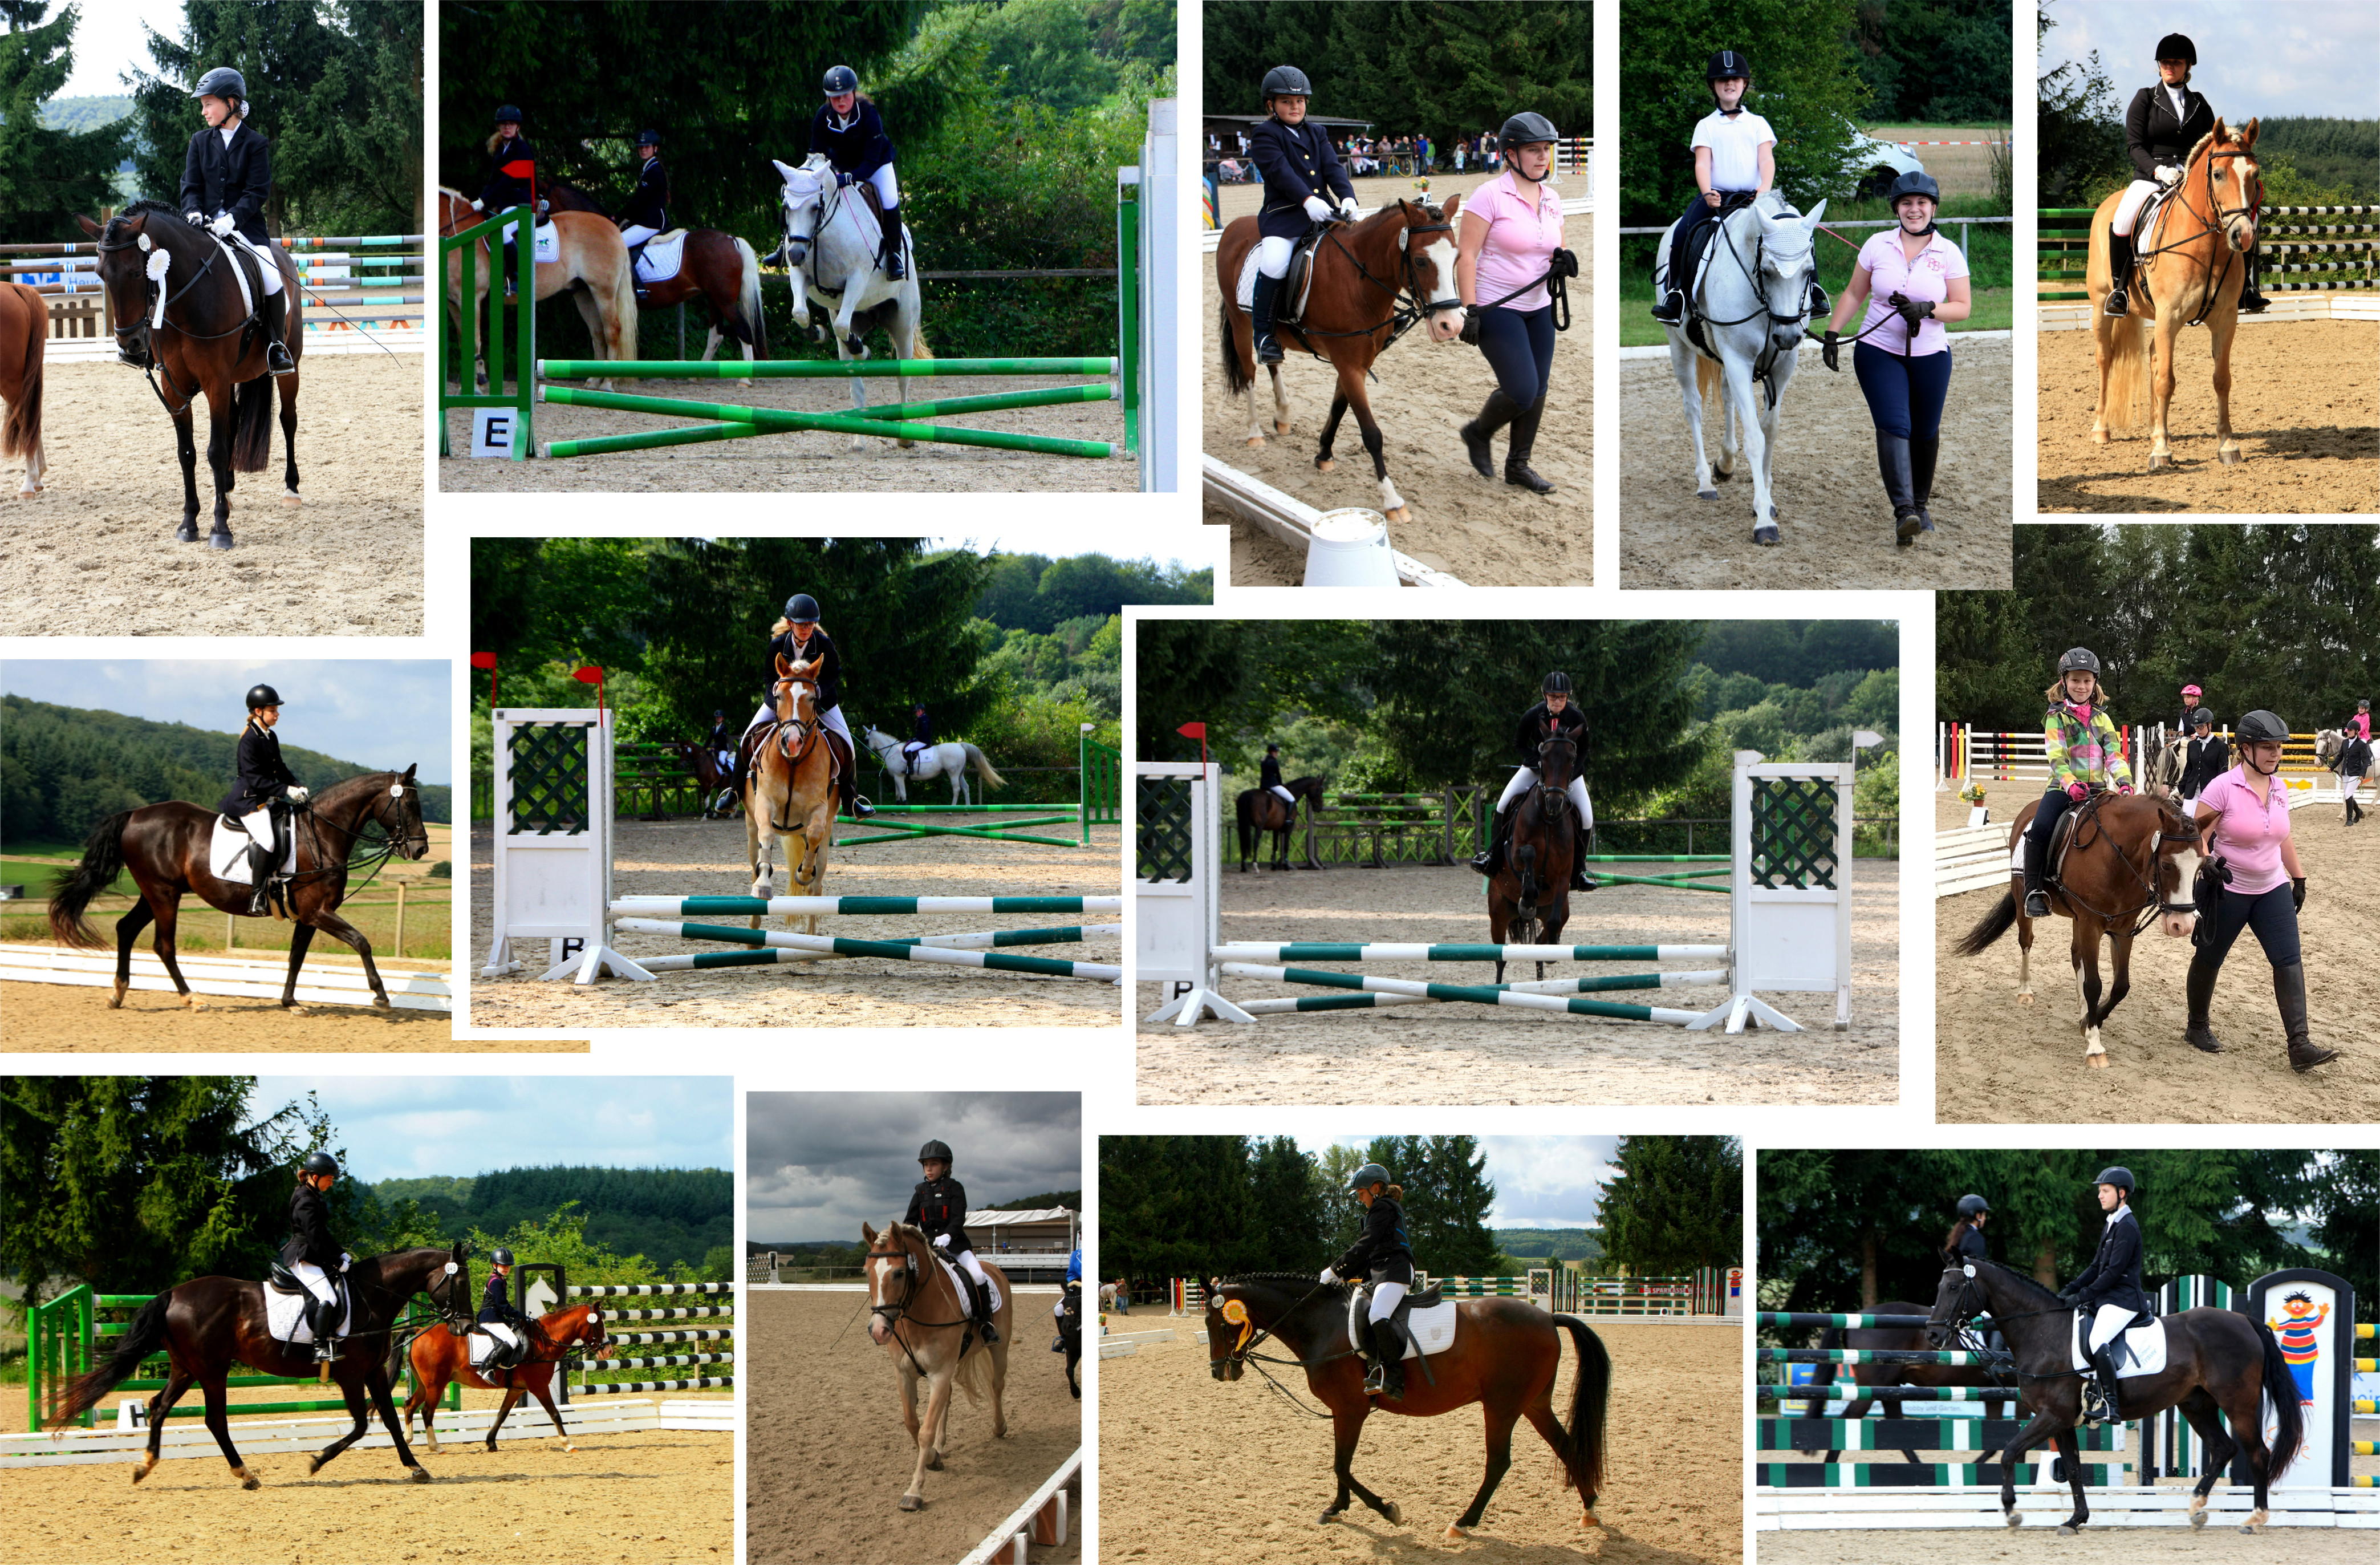 Mit 14 Startern und fünf Pferden konnte auf dem Turnier in Erda gute Platzierungen erreicht werden.